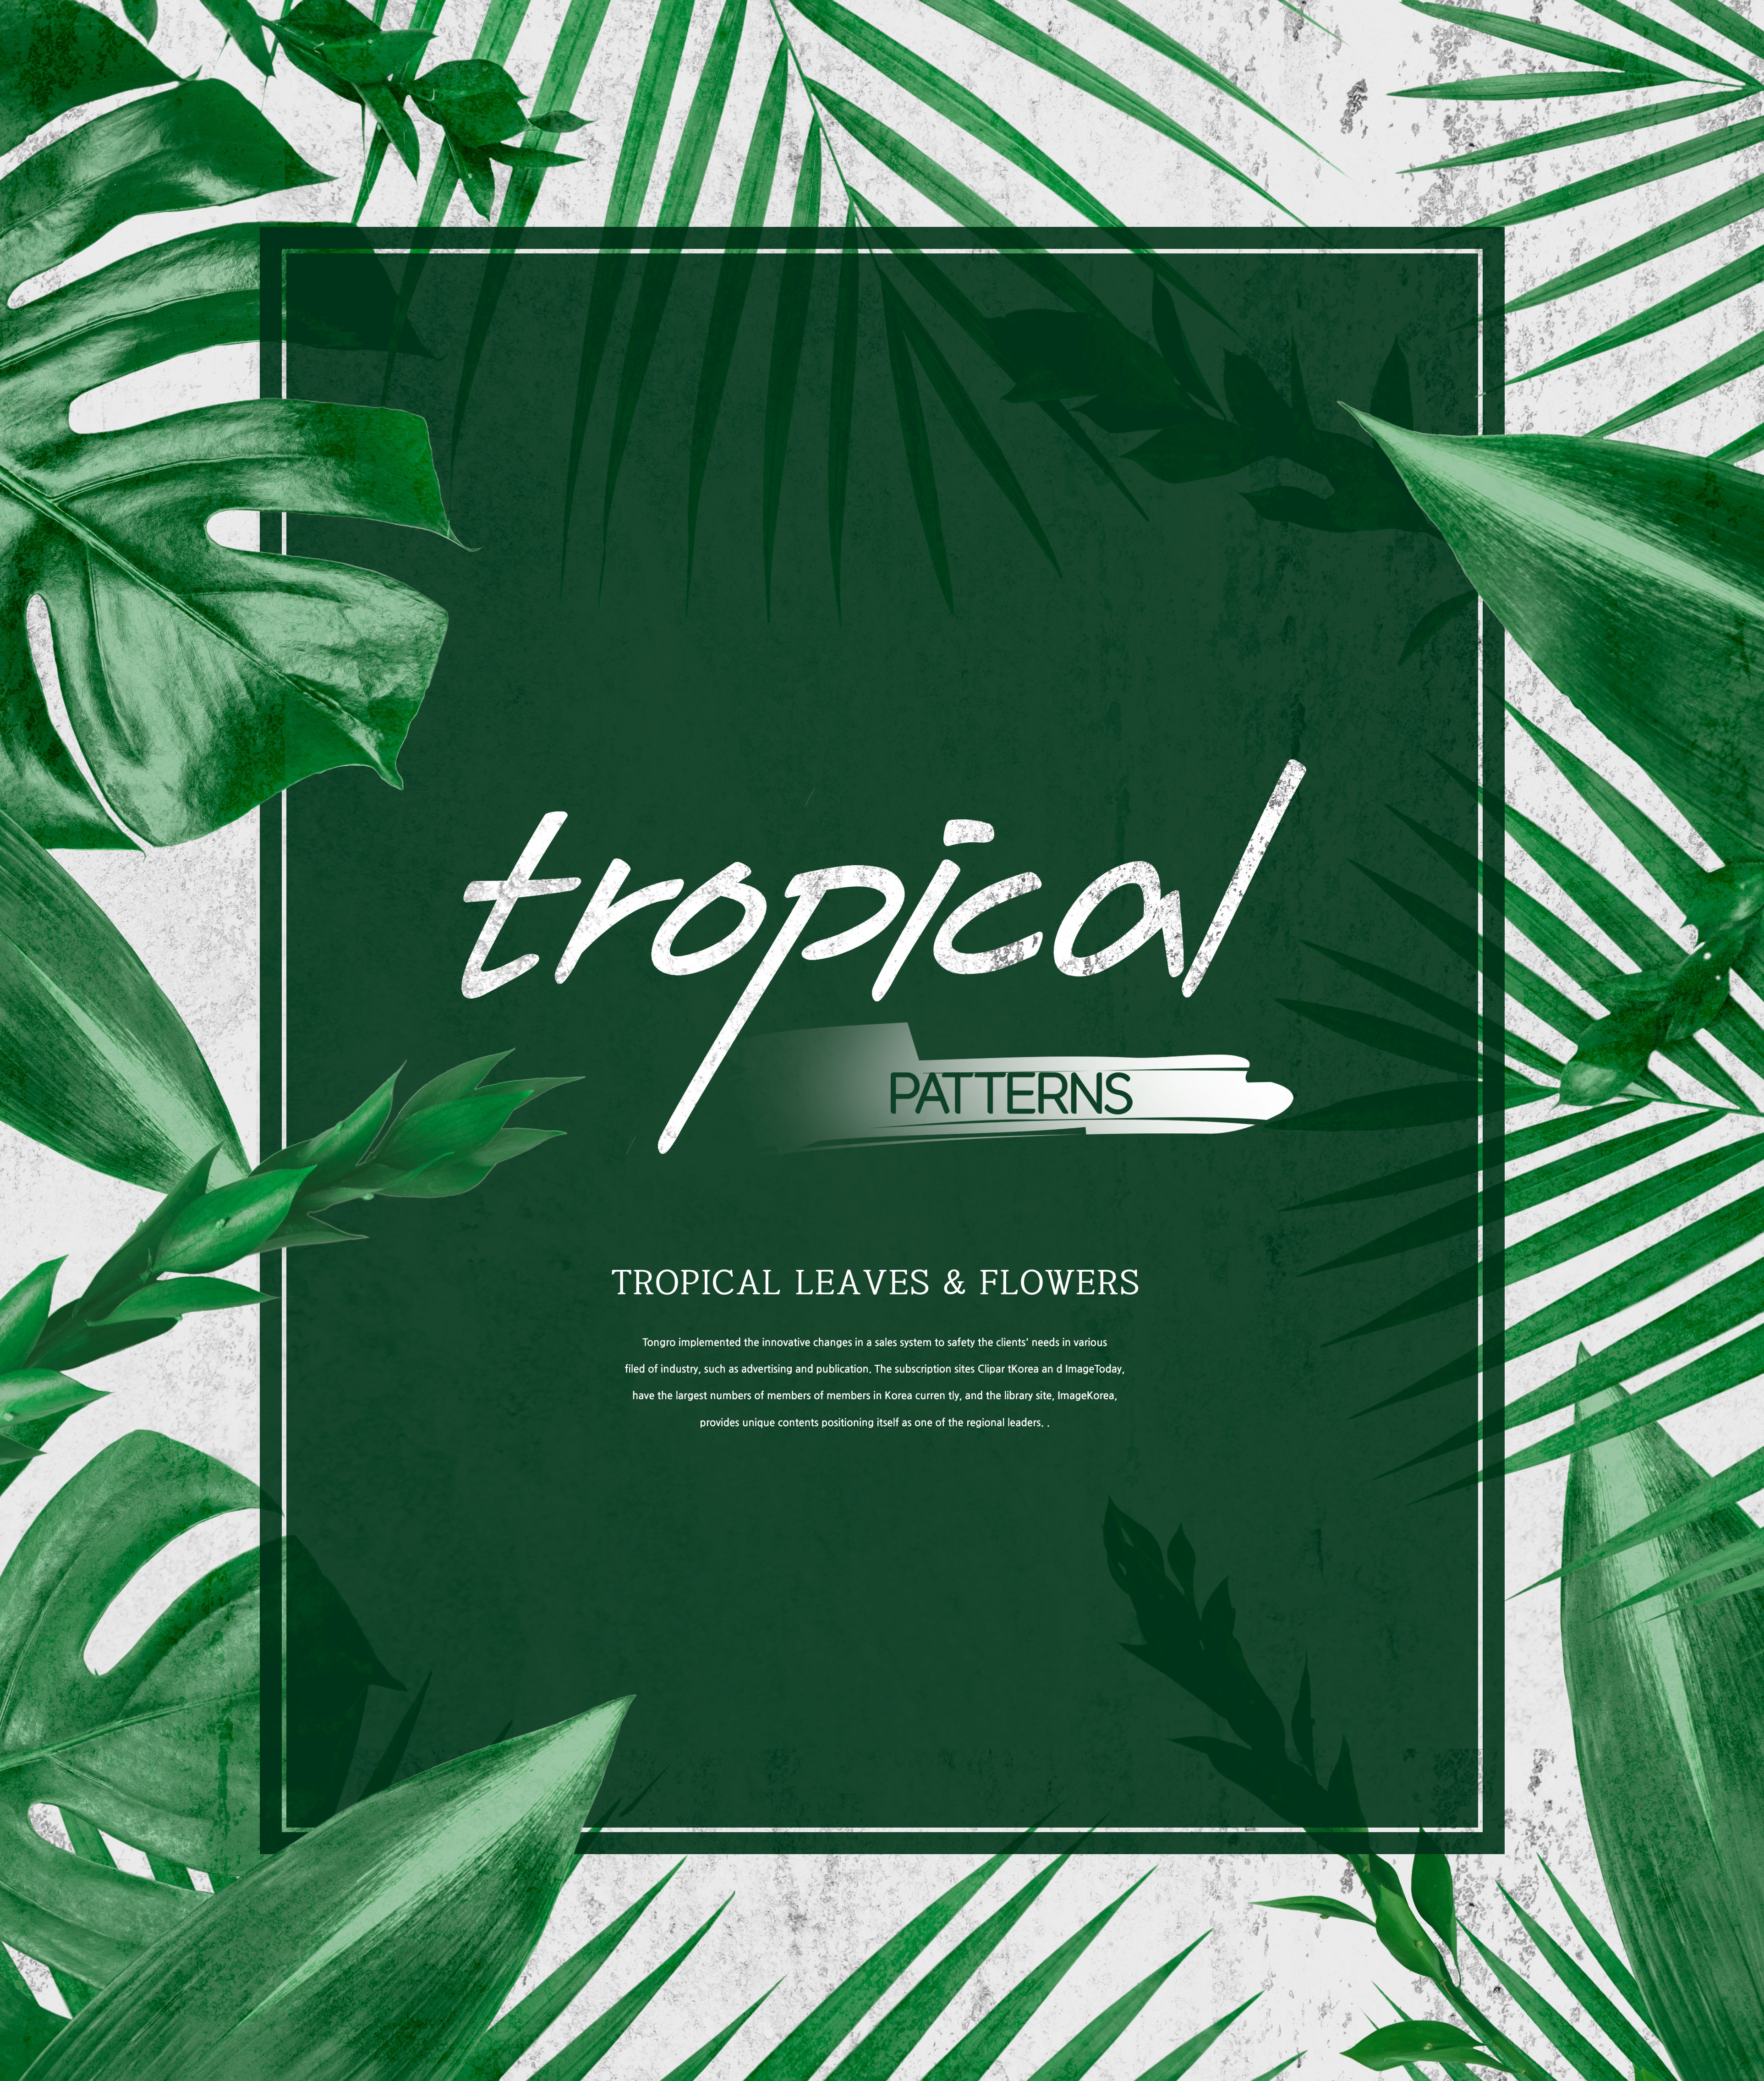 热带主题叶子&花卉图案海报设计素材插图